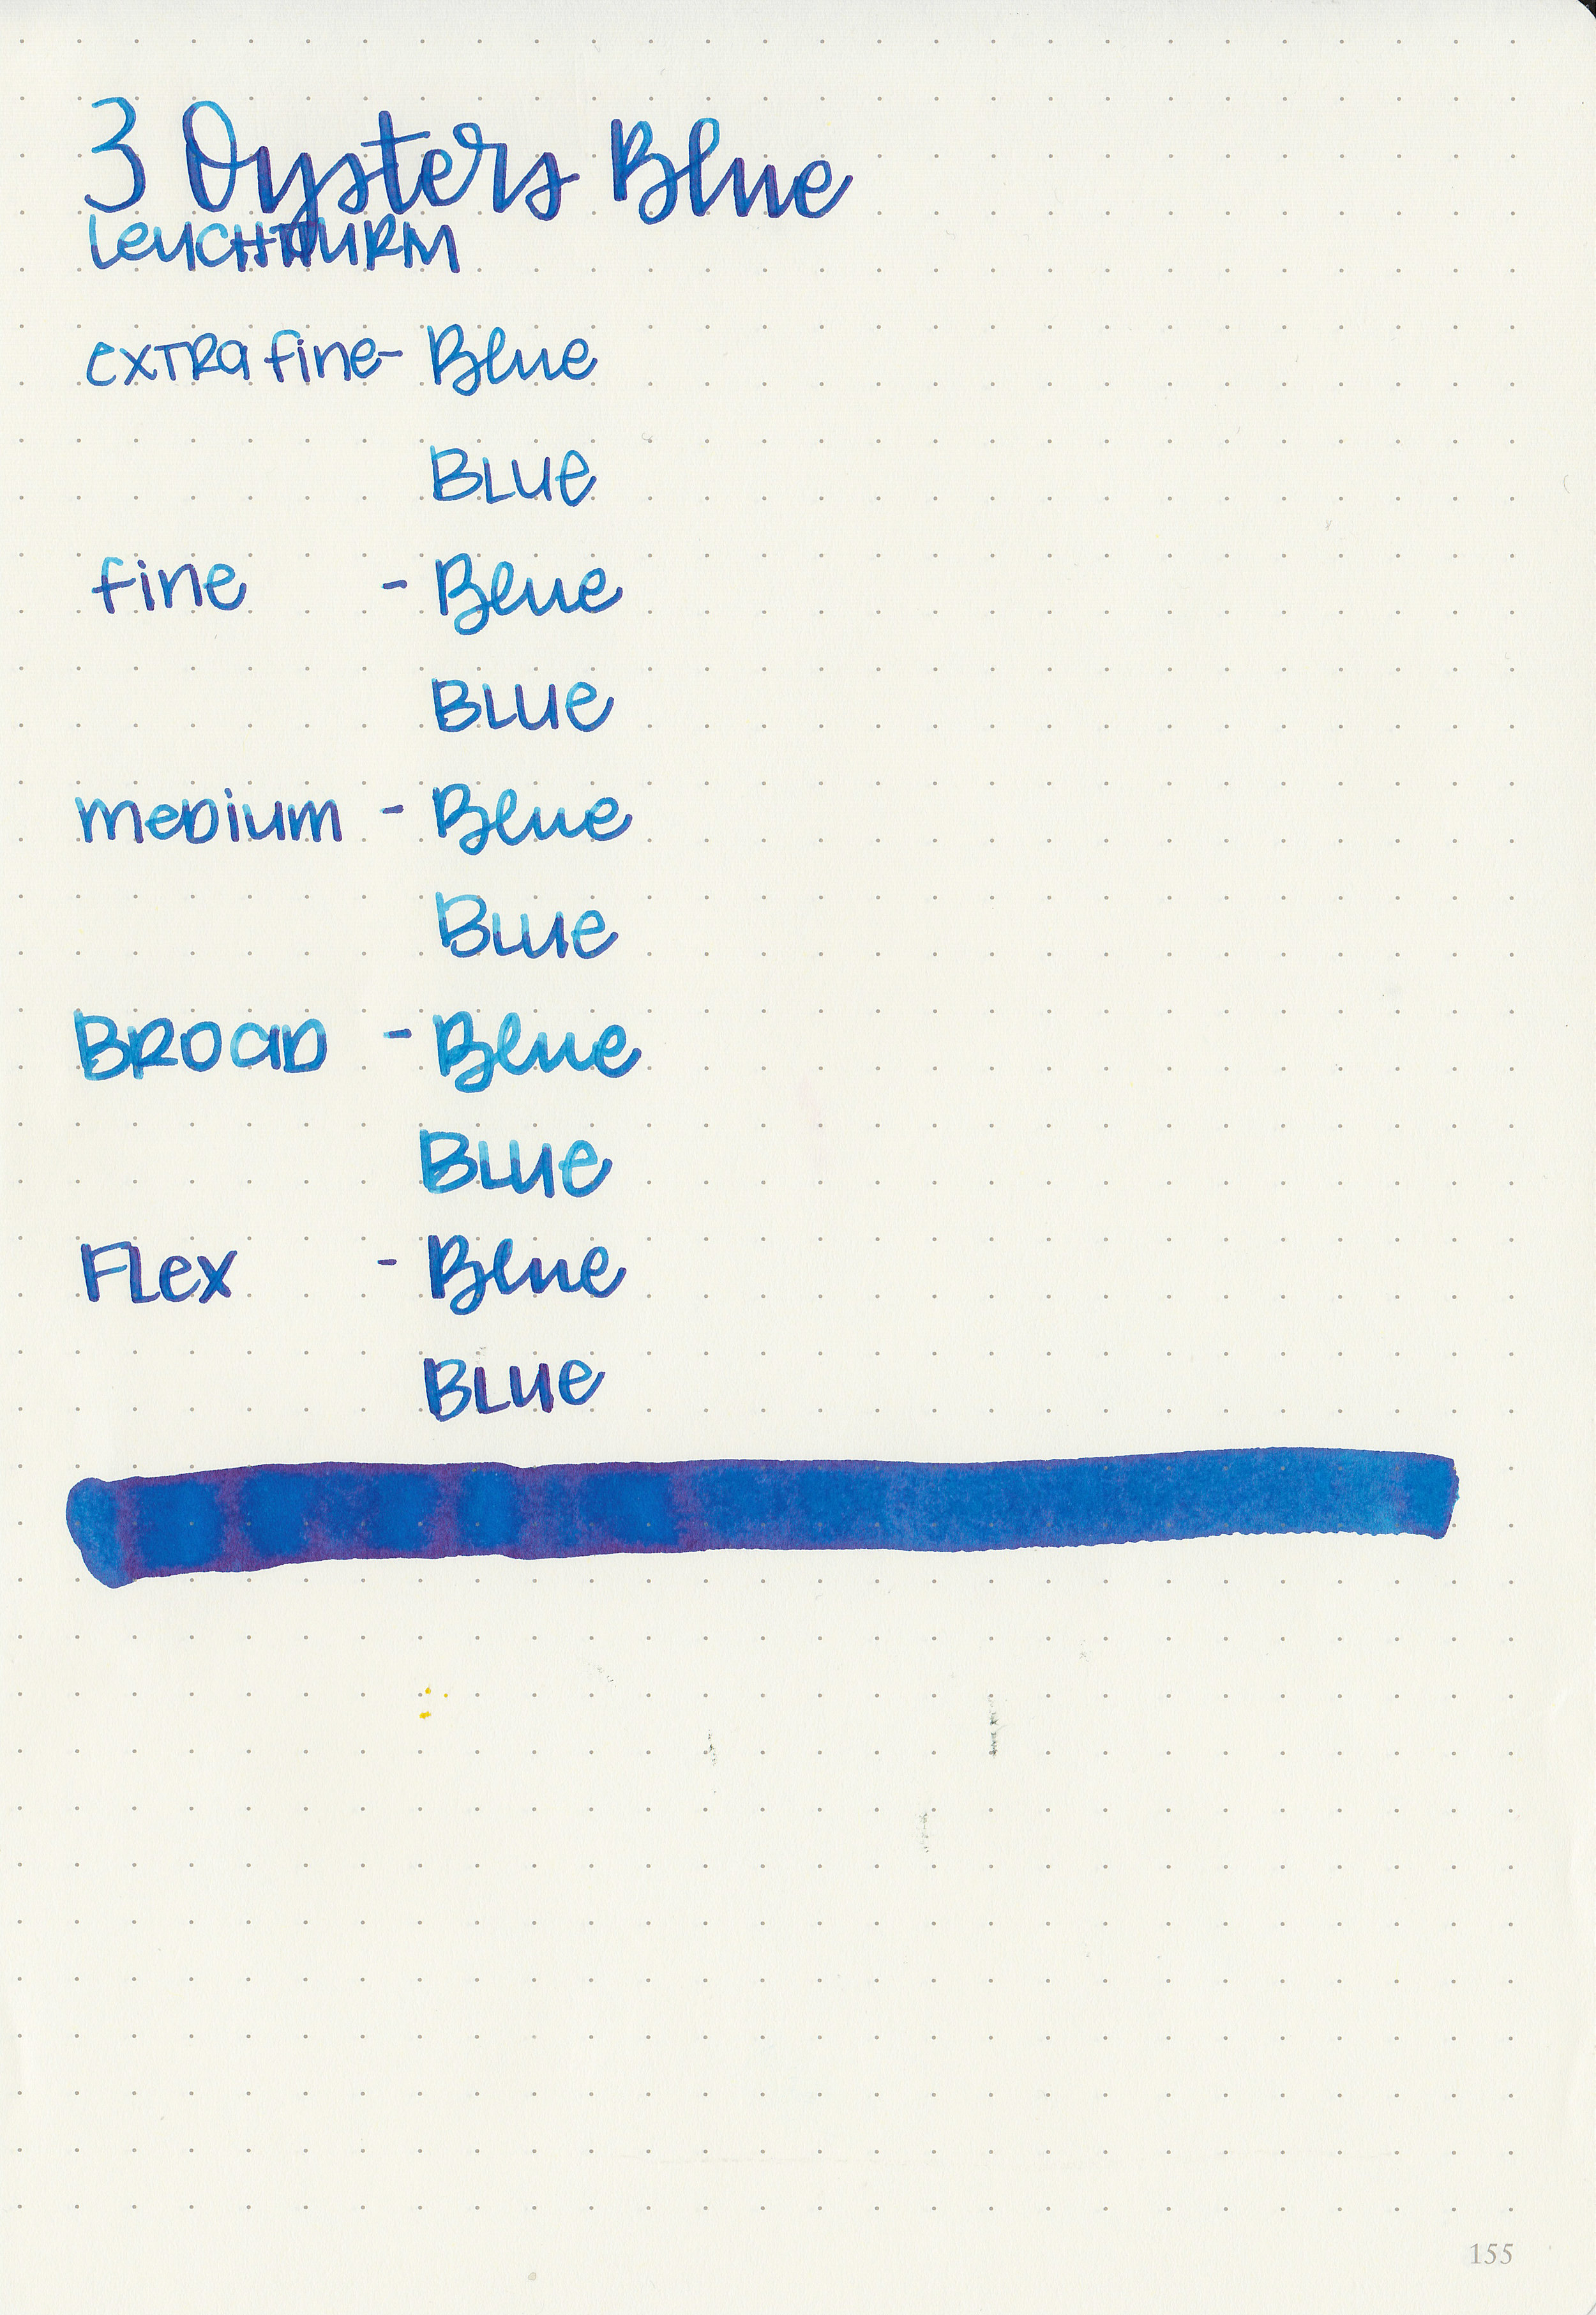 3o-blue-9.jpg